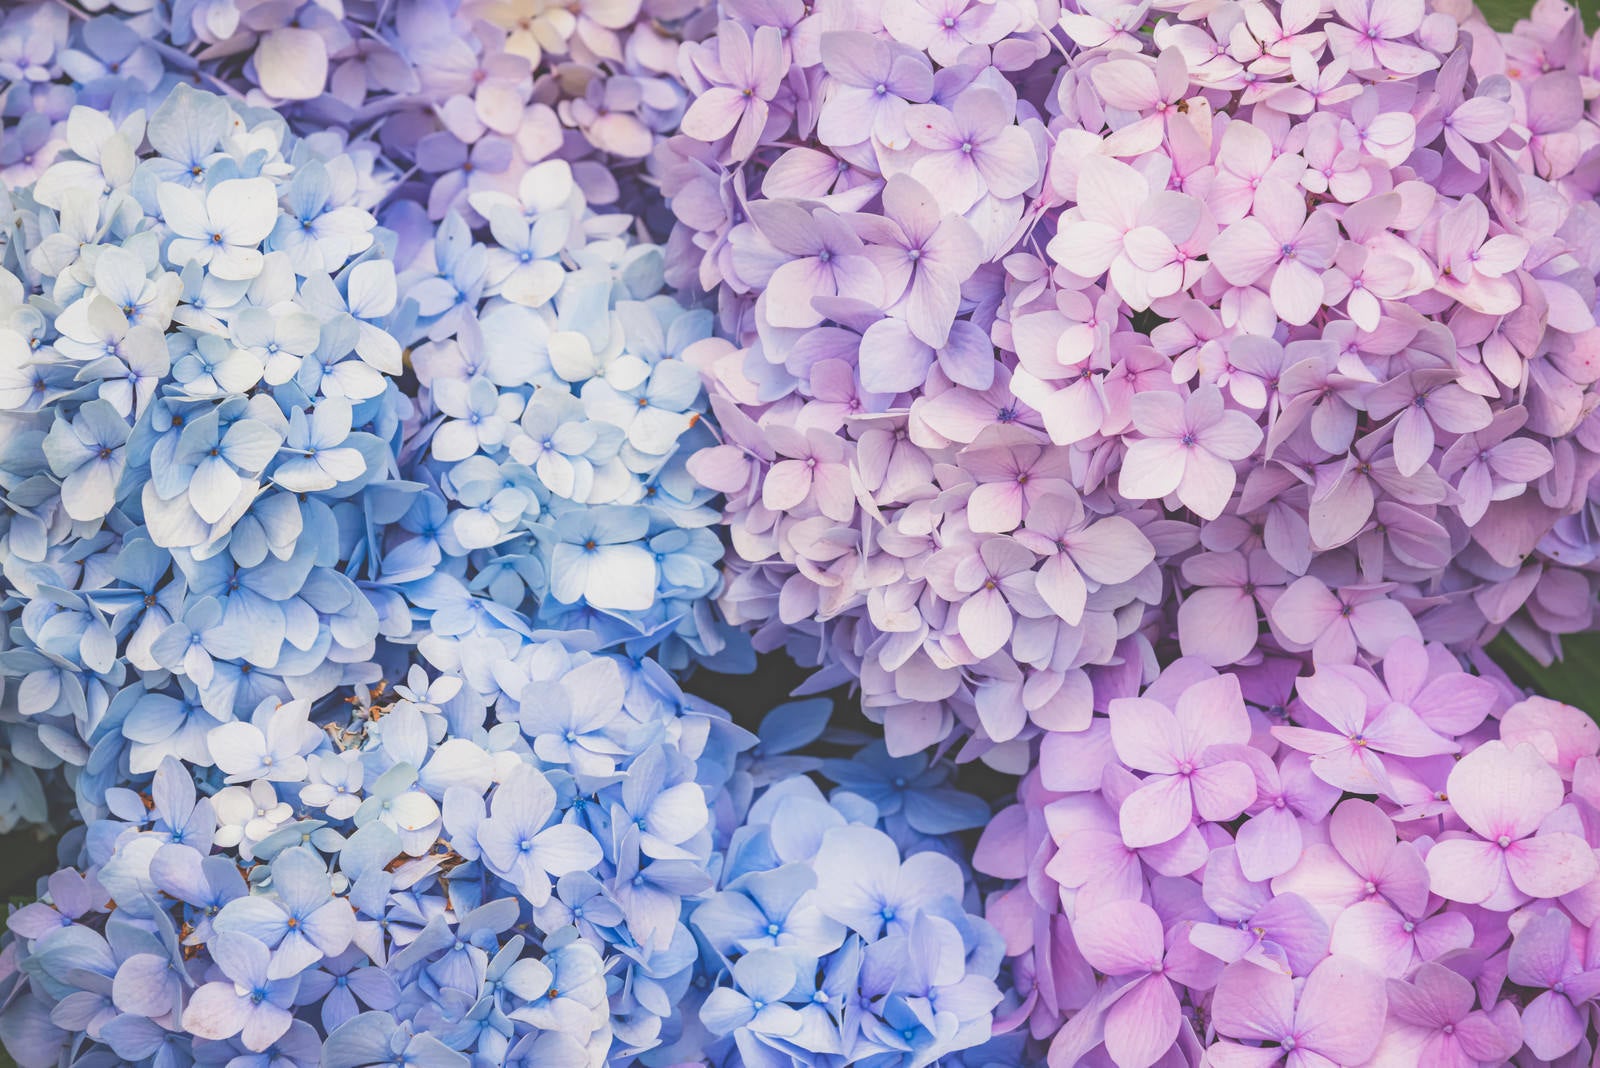 「満開の紫陽花が広がる」の写真